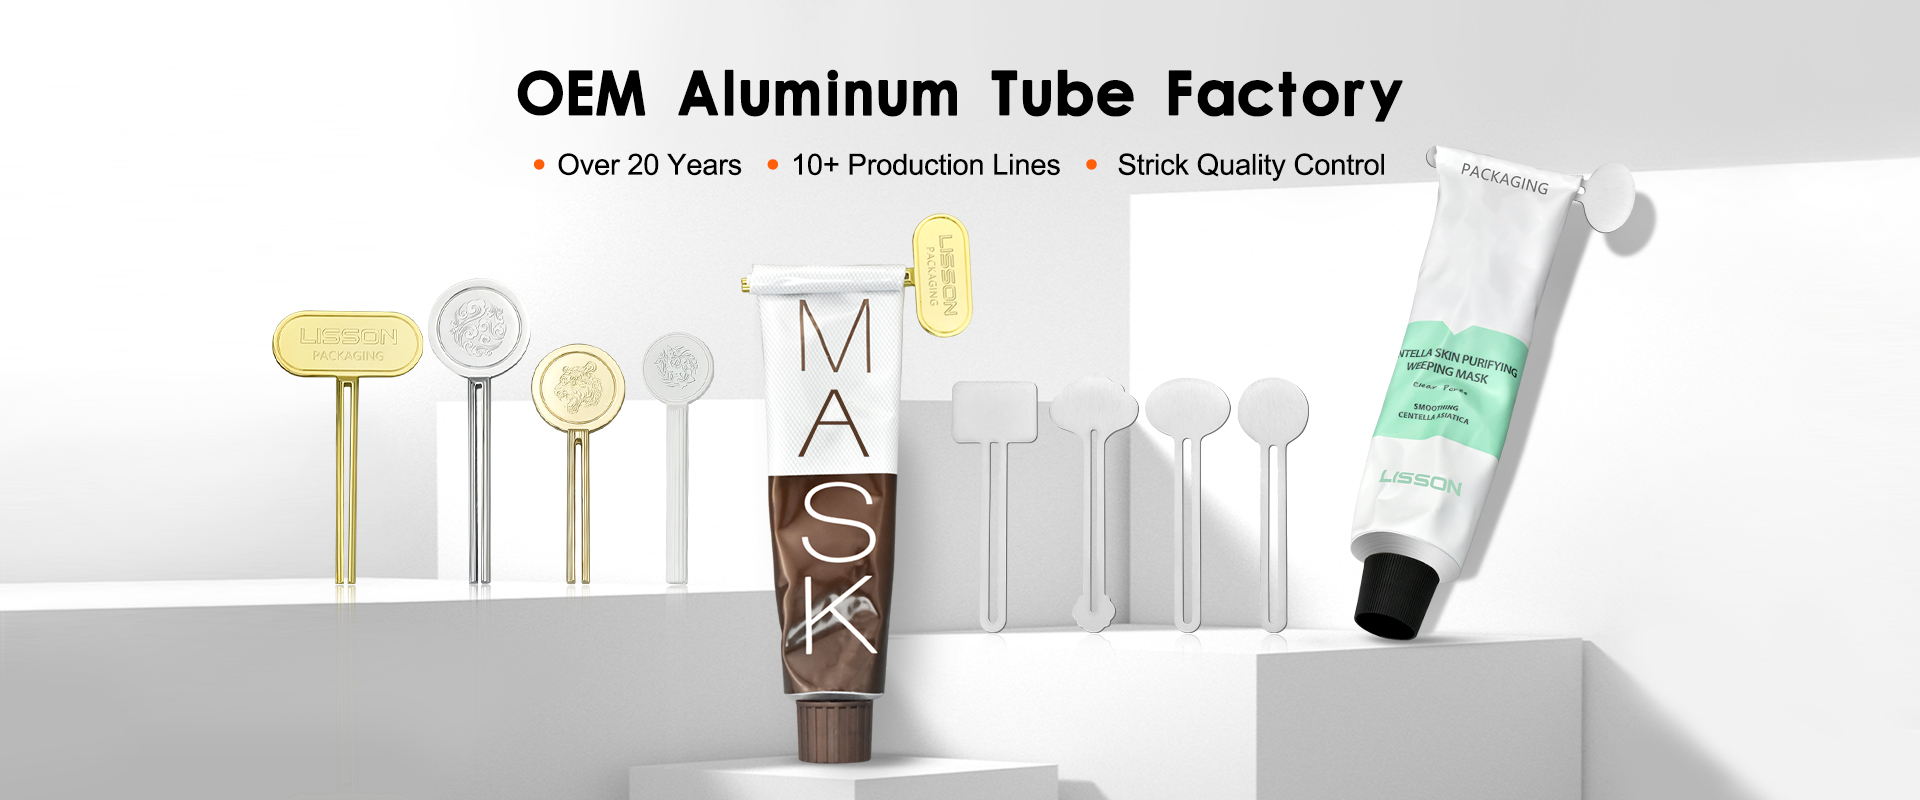 Original Aluminum tube factory